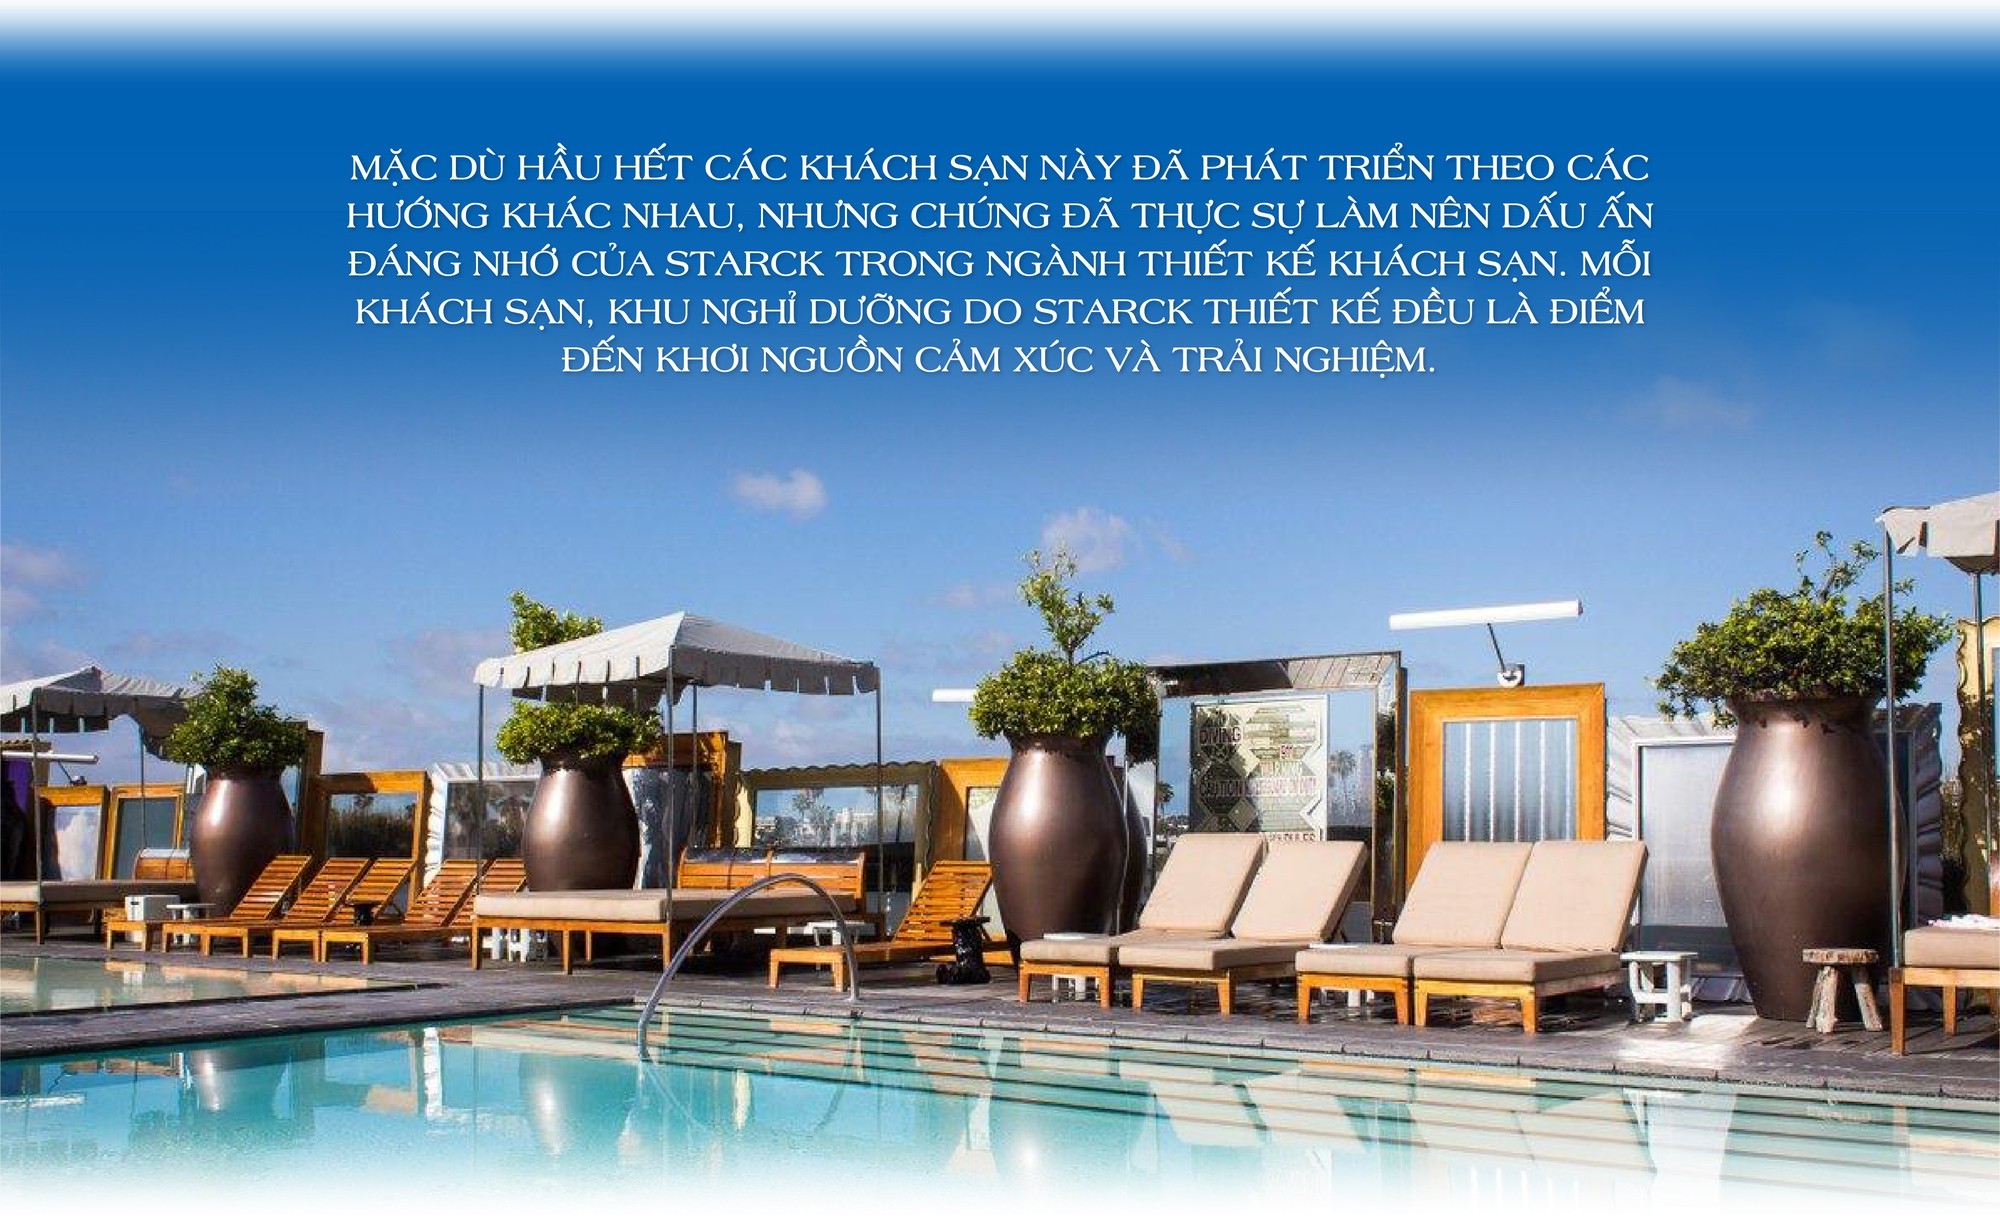 Philippe Starck - Huyền thoại thiết kế làm thay đổi ngành khách sạn thế giới đã chọn hợp tác trong một dự án tại Việt Nam - Ảnh 3.